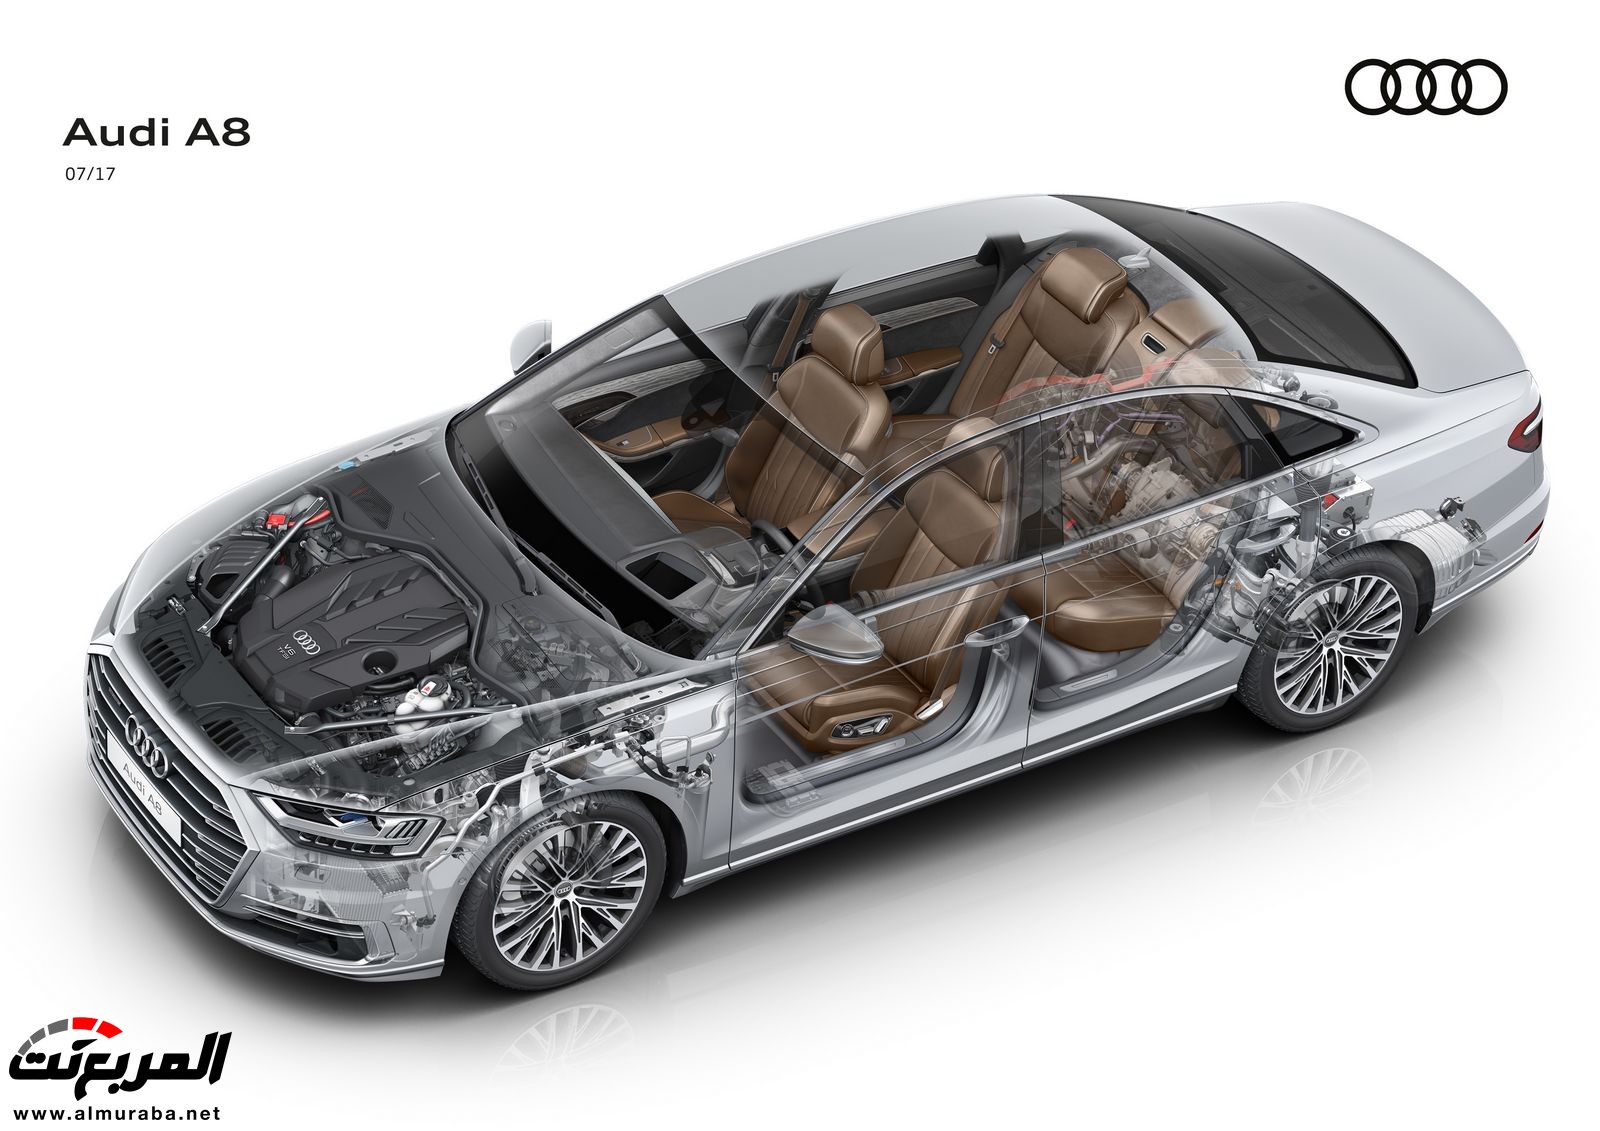 أودي A8 2018 الجديدة كلياً تكشف نفسها بتصميم وتقنيات متطورة "معلومات + 100 صورة" Audi A8 70